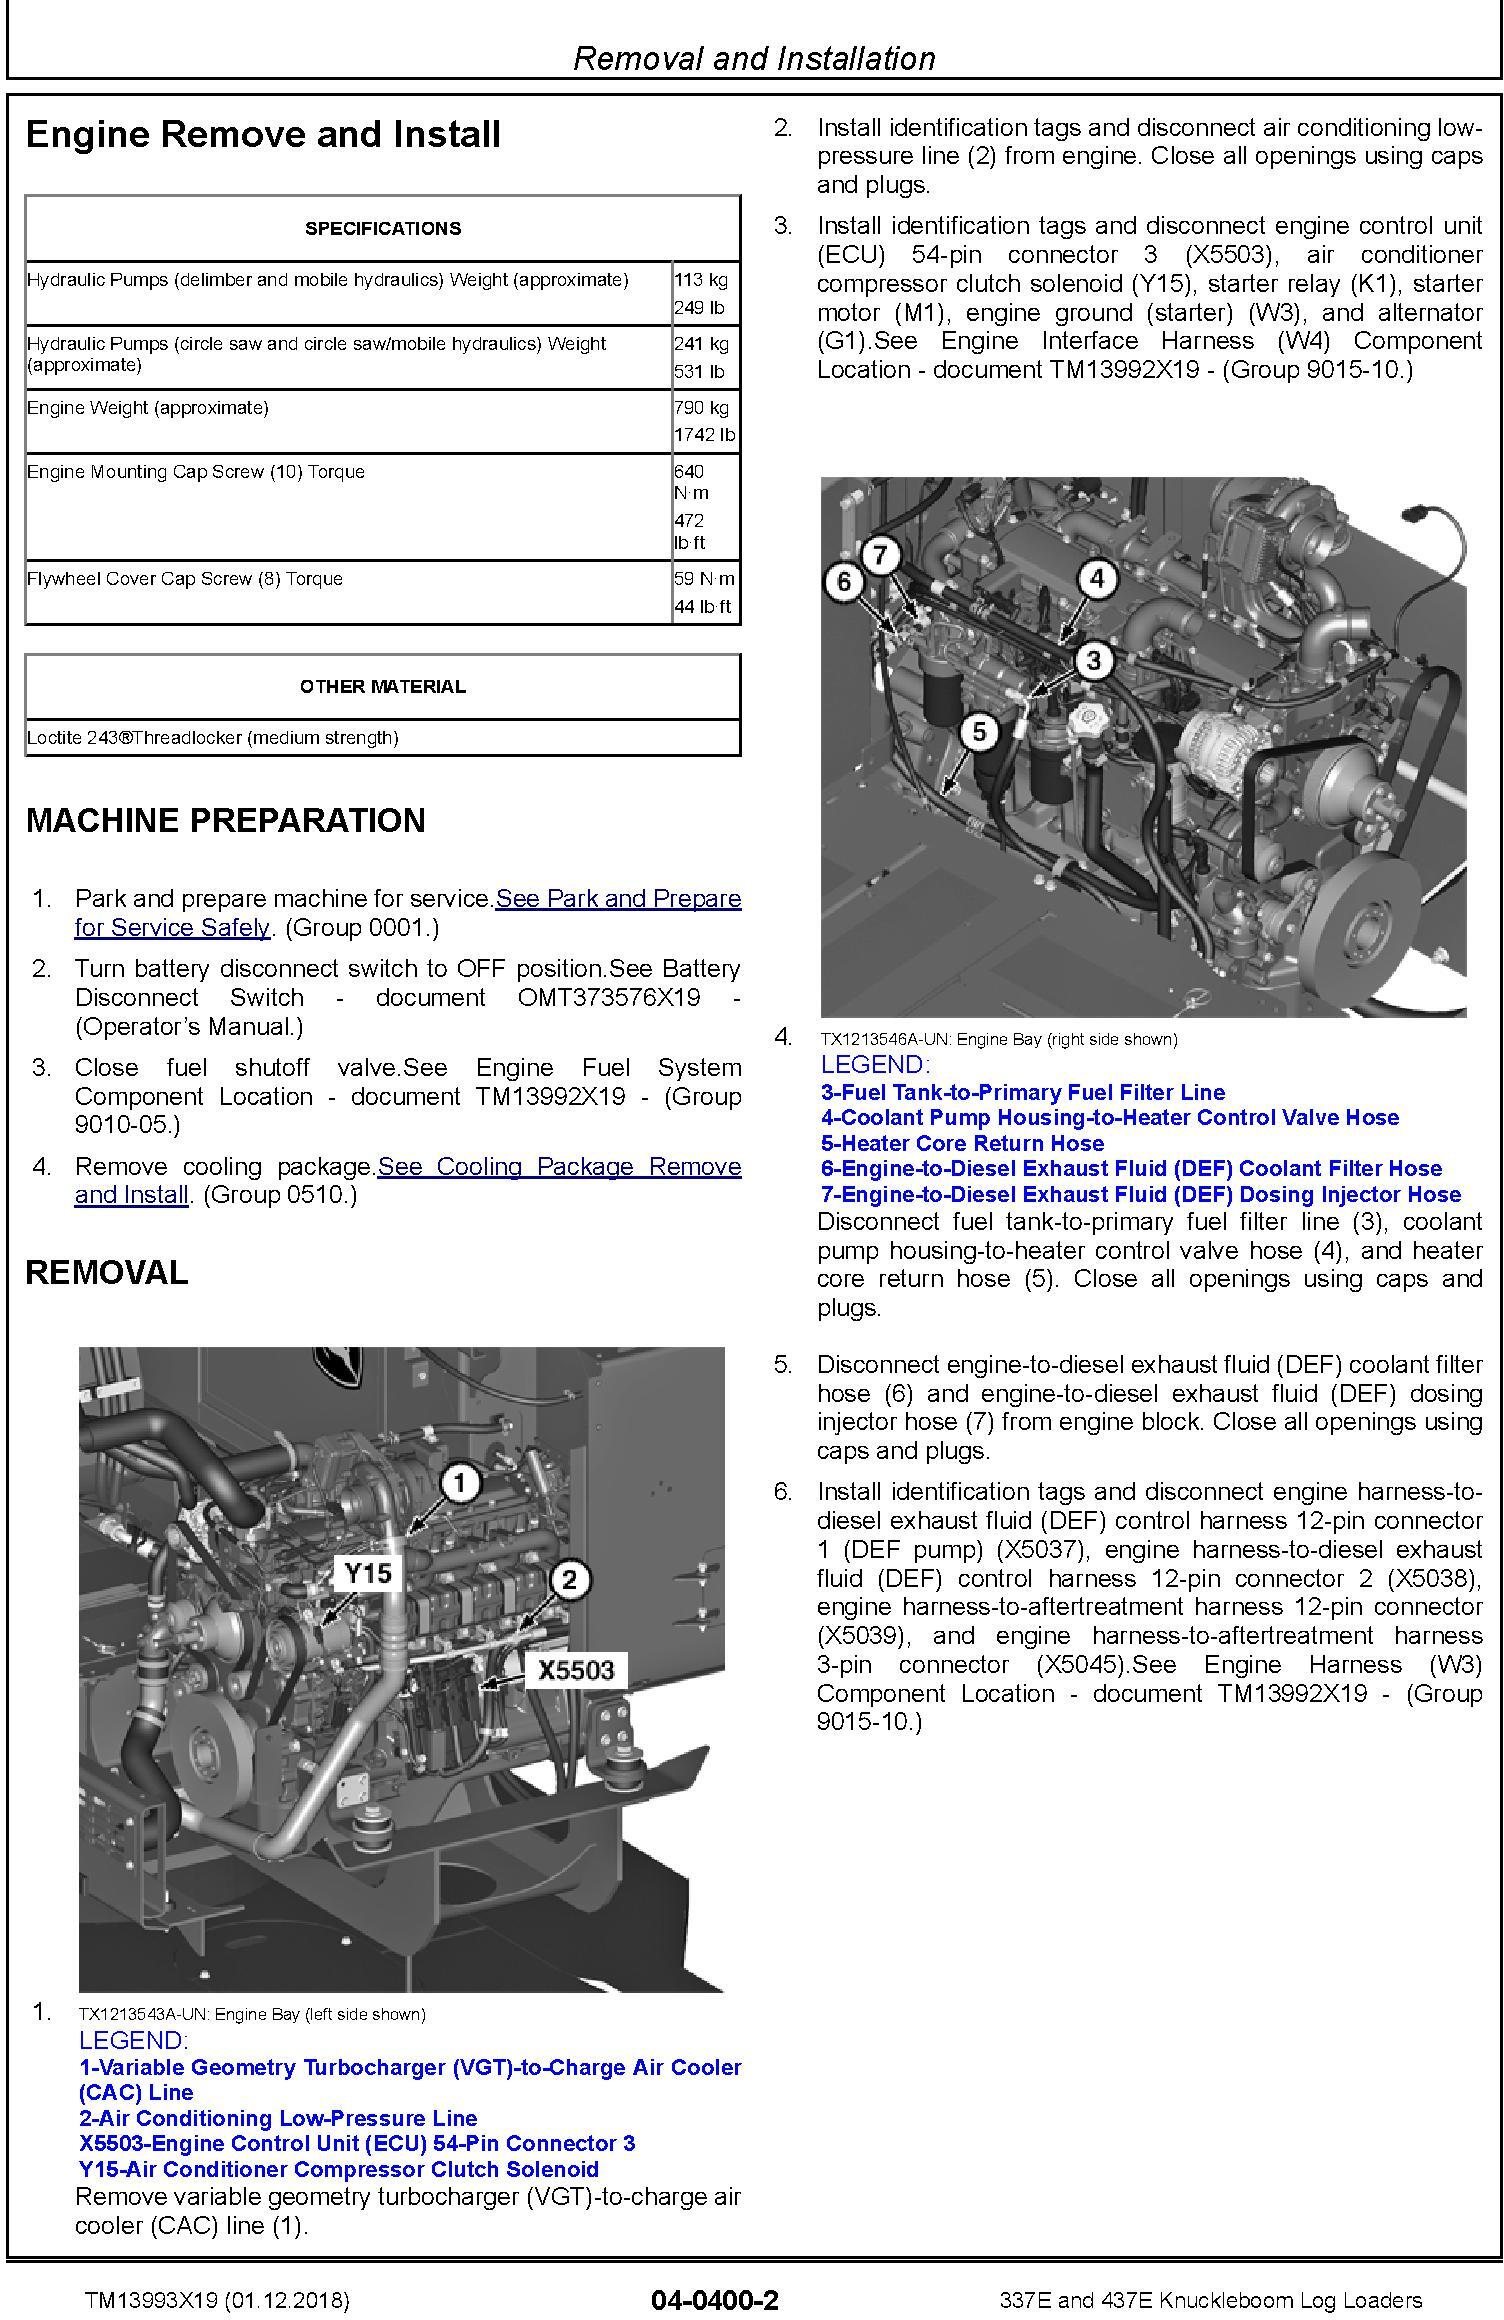 John Deere 337E, 437E (SN.F291461-) Knuckleboom Log Loaders Repair Manual (TM13993X19) - 2